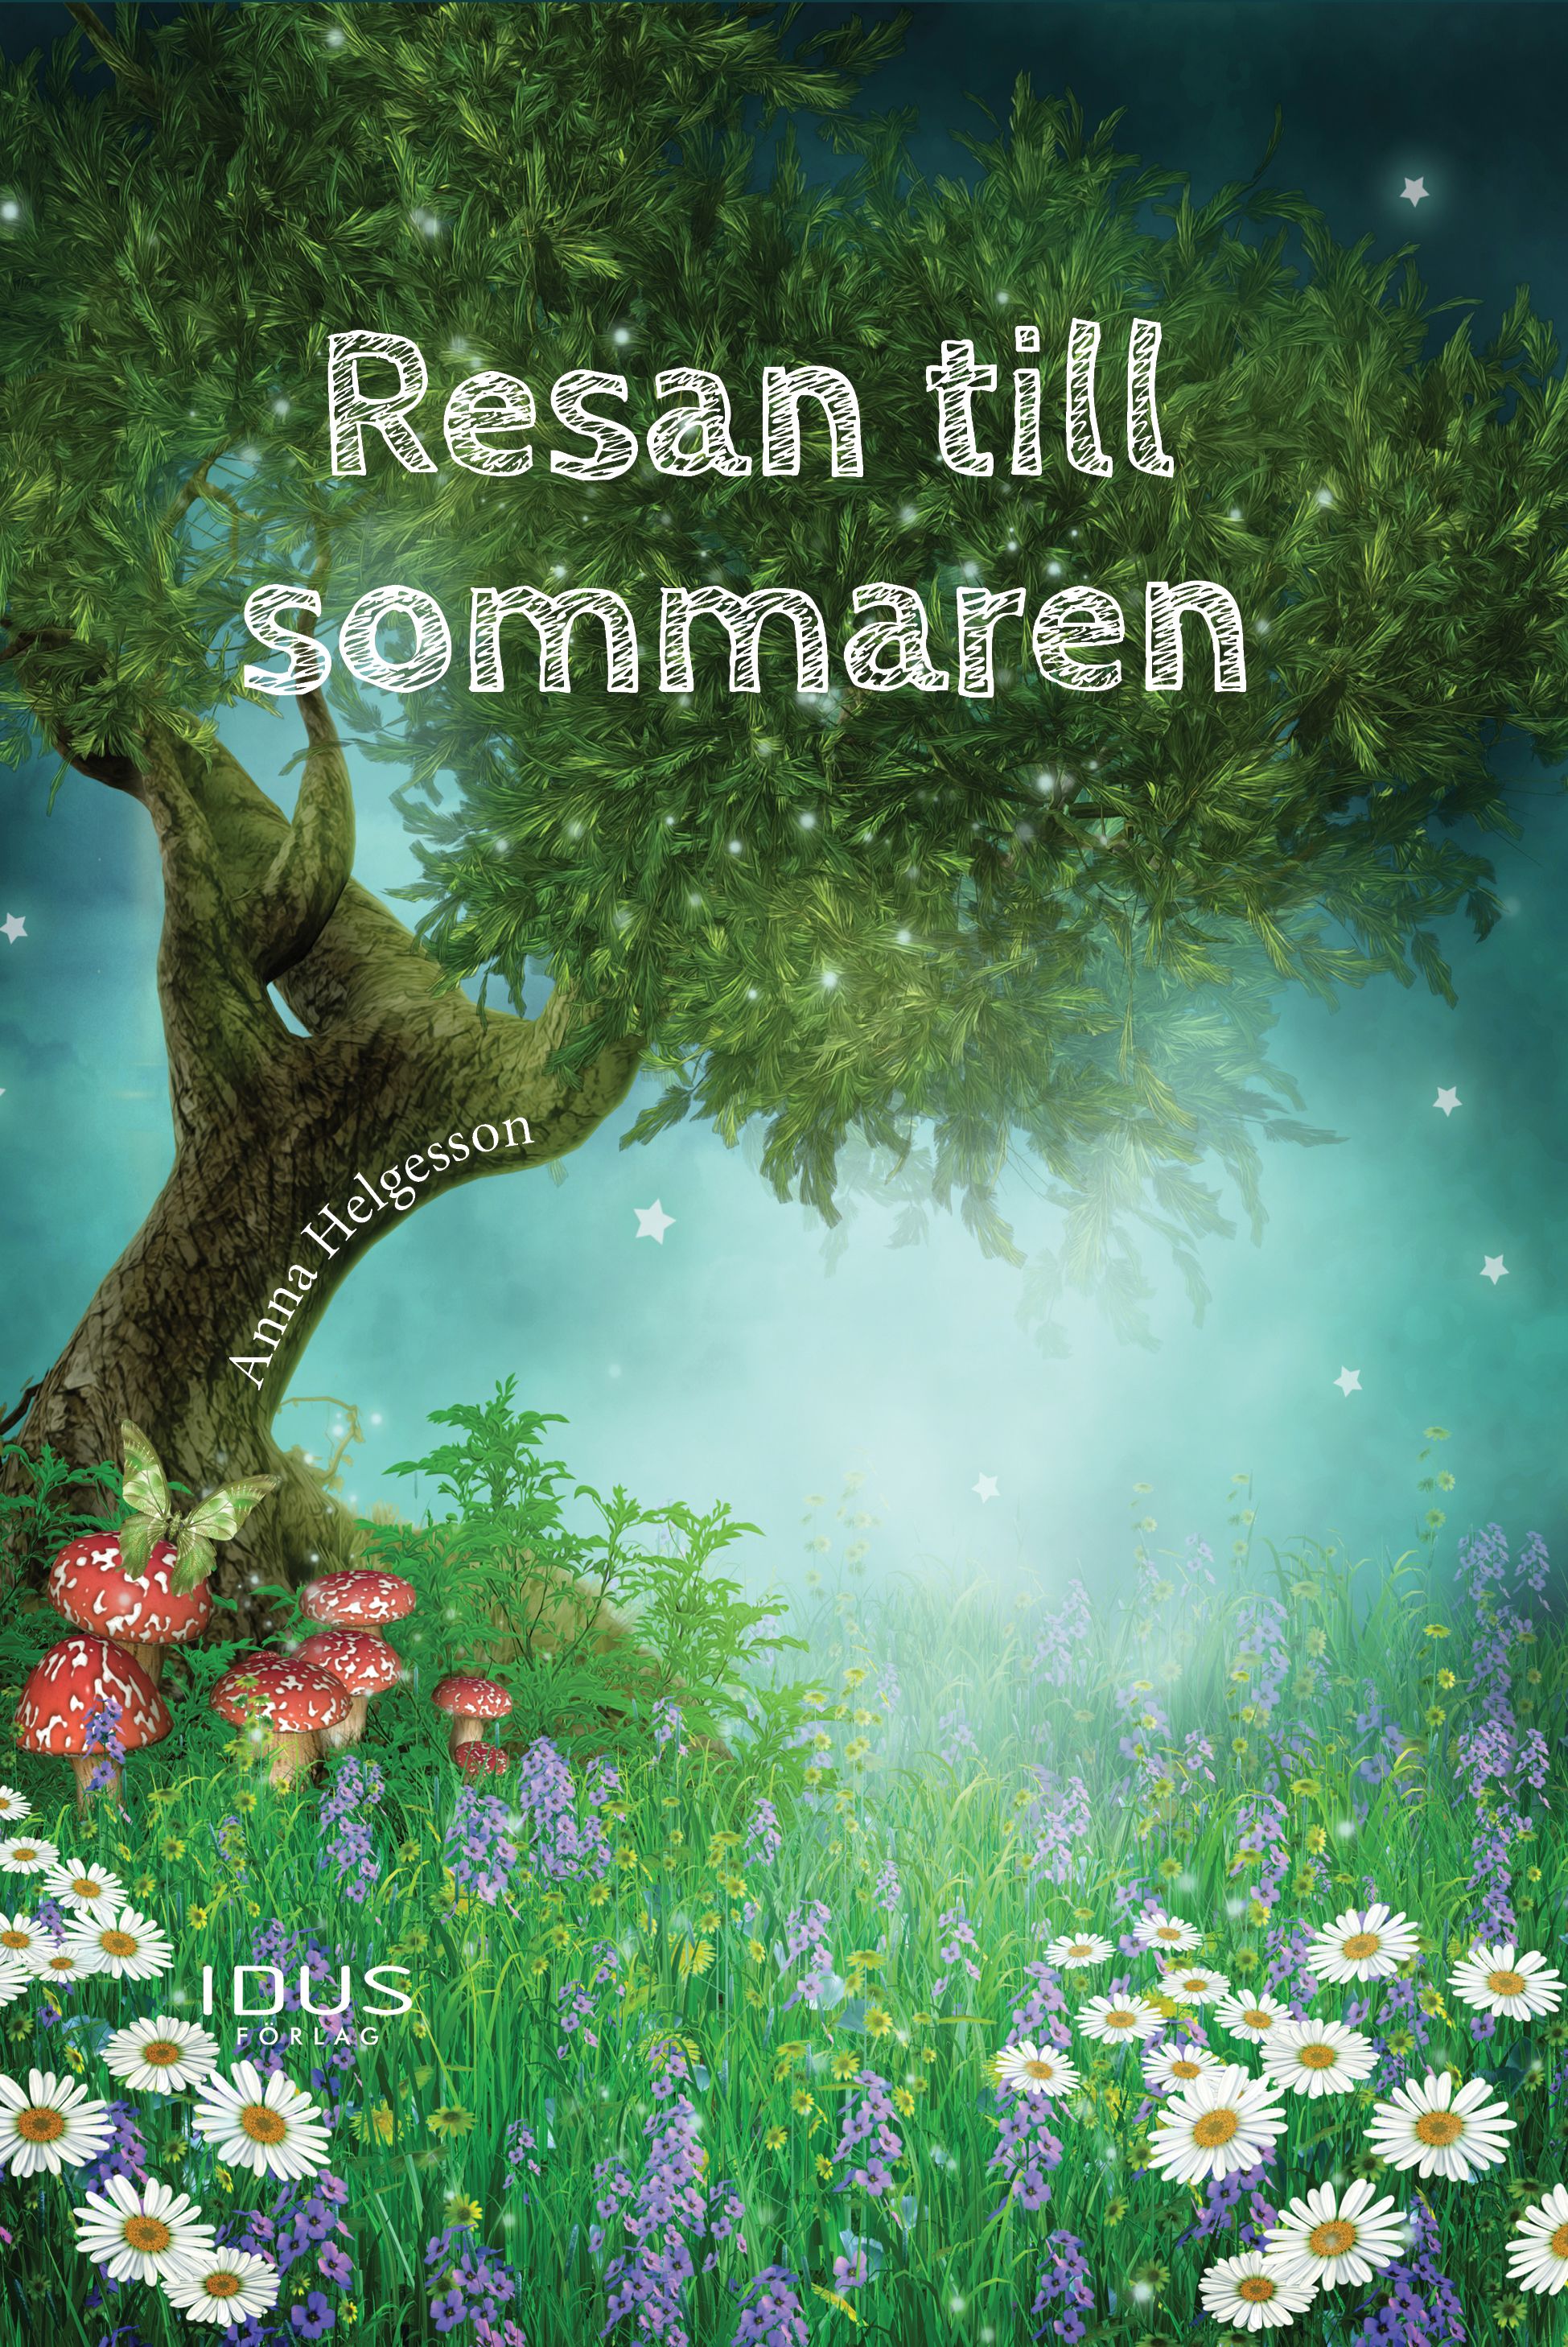 Resan till sommaren, audiobook by Anna Helgesson